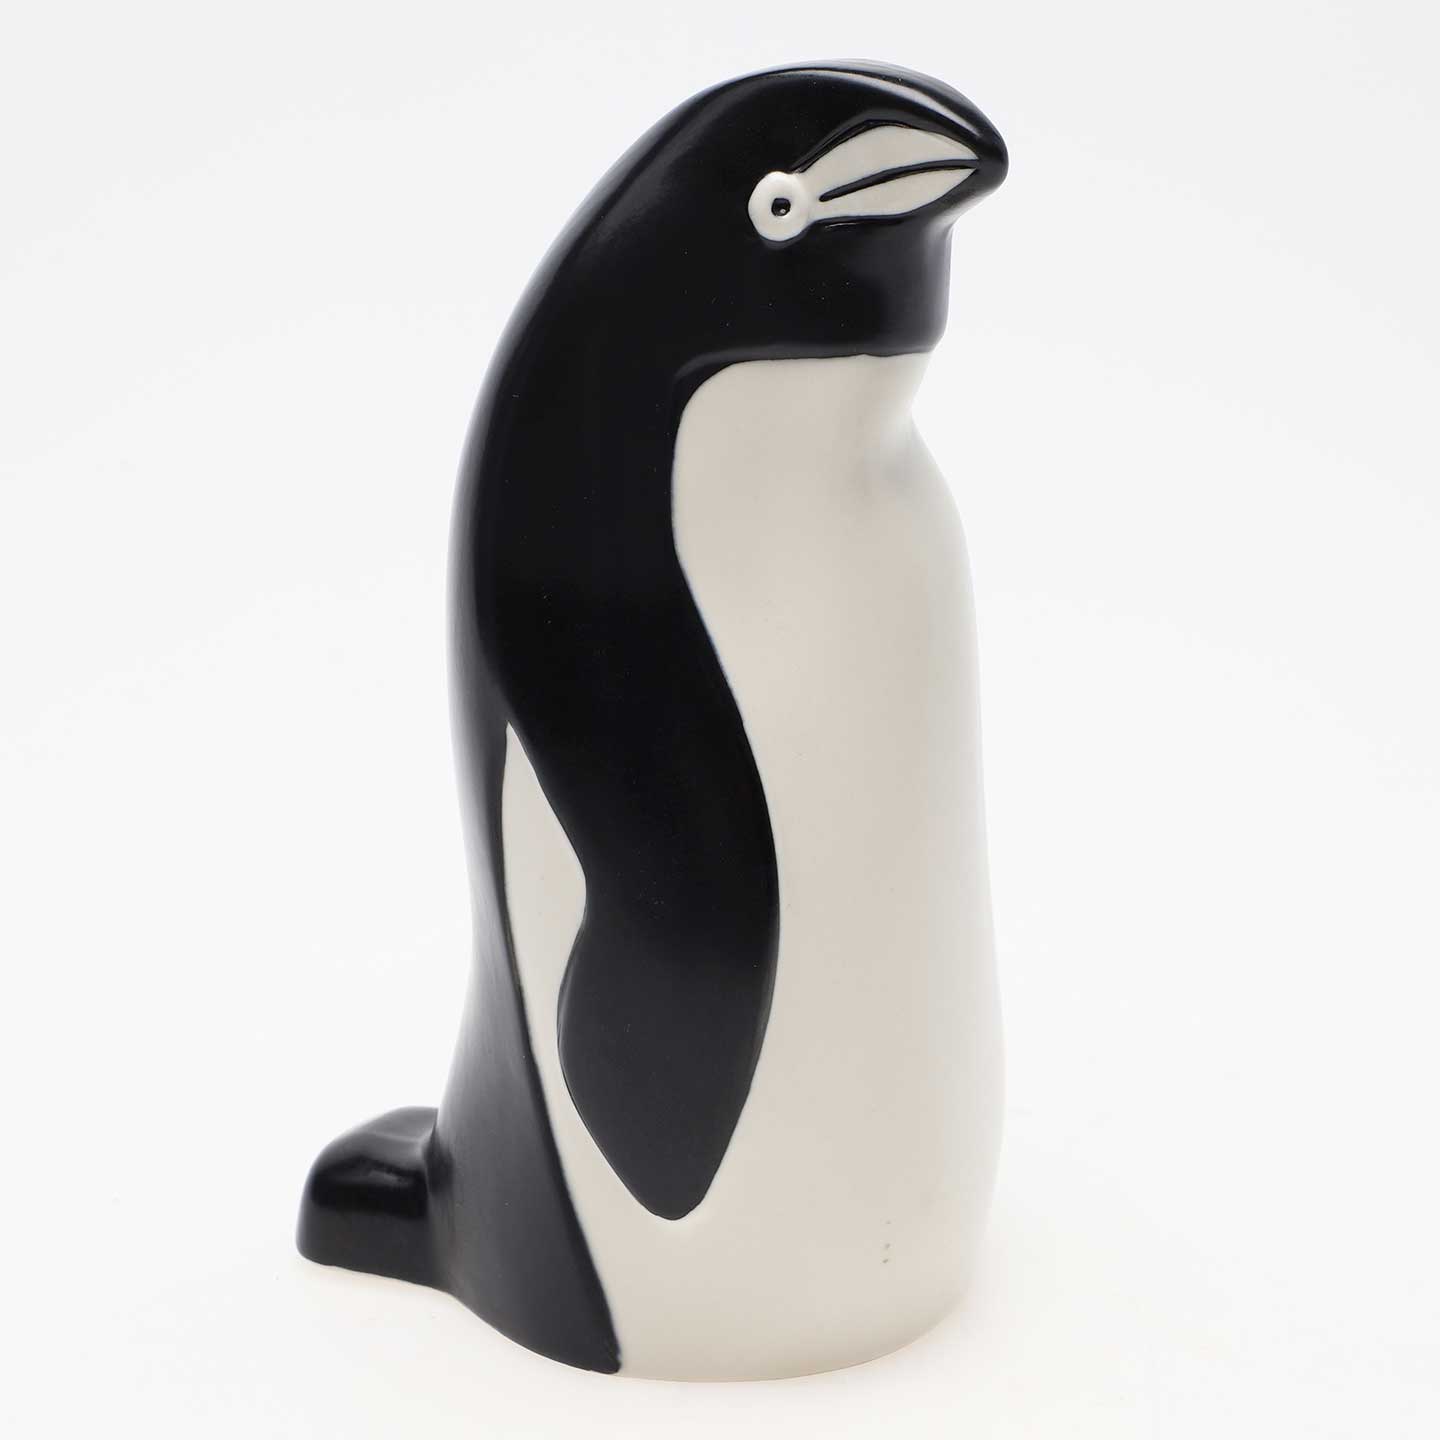 アラビア WWFのペンギンの置物 リルモア・マンネルヘイム ヴィンテージ